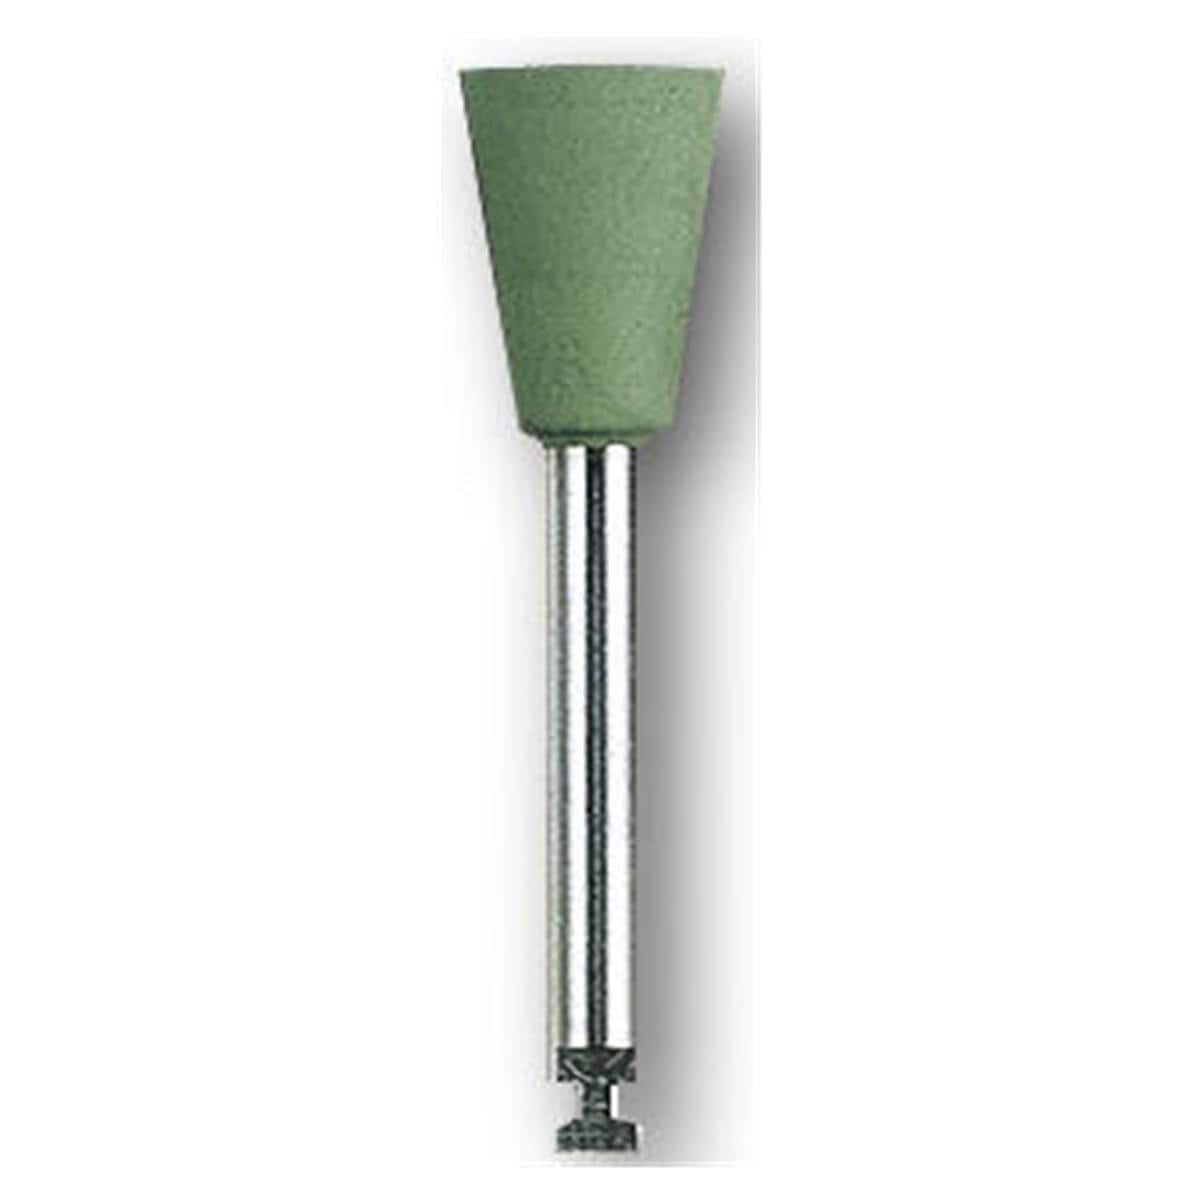 HS-Amalgam Polierer - Nachfüllpackung - Kelch grün, 0655, Polierkopf: 6,5 x 9,5 mm, Packung 12 Stück